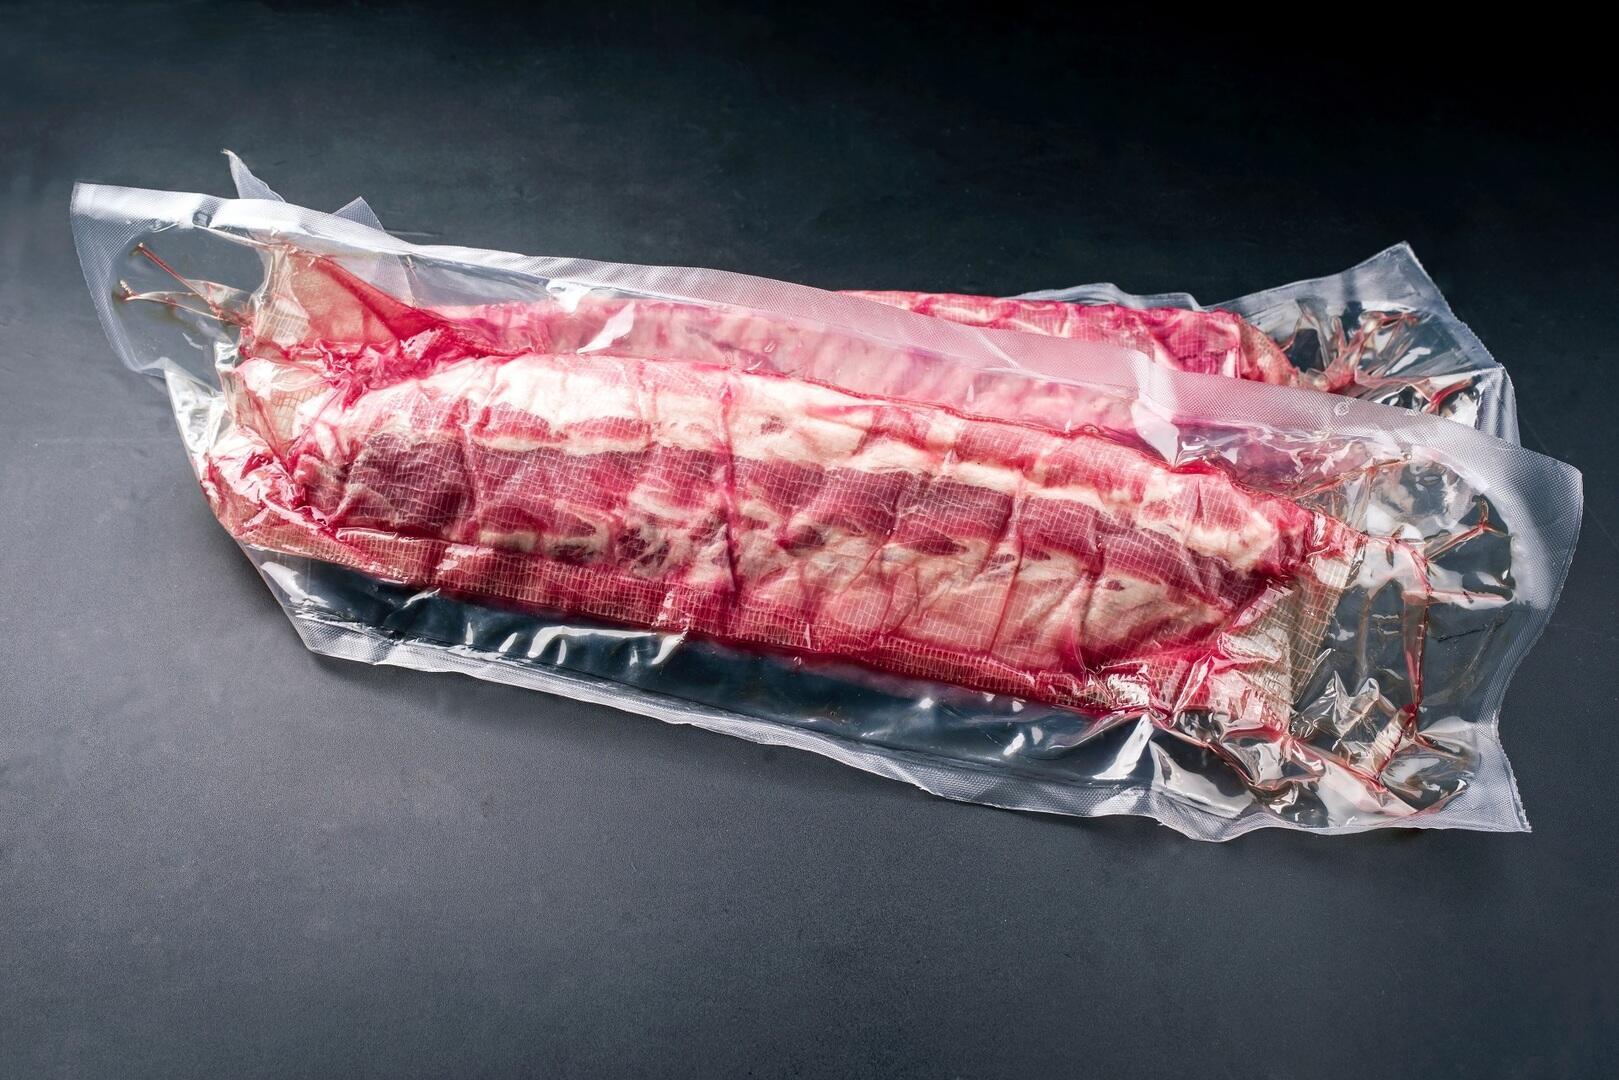 Für Fleisch nutzt du im Normalfall Vakuumverpackungen